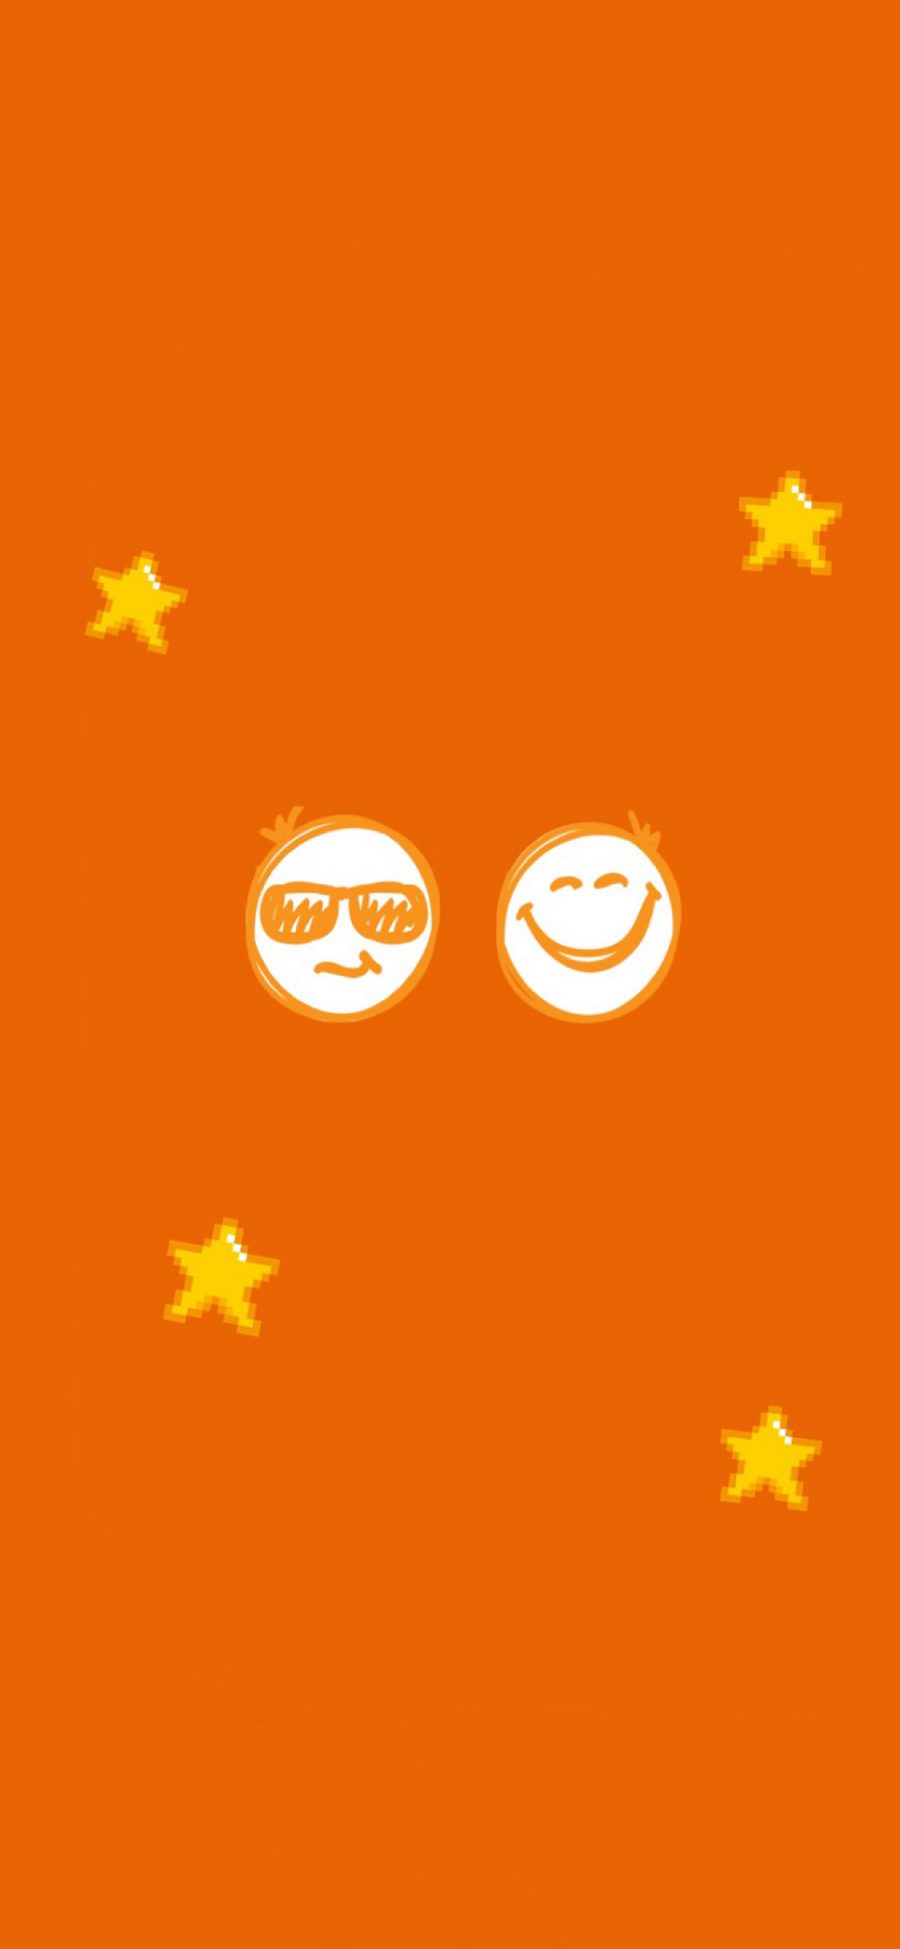 [2436×1125]橙色背景 表情 笑脸 星星 苹果手机动漫壁纸图片